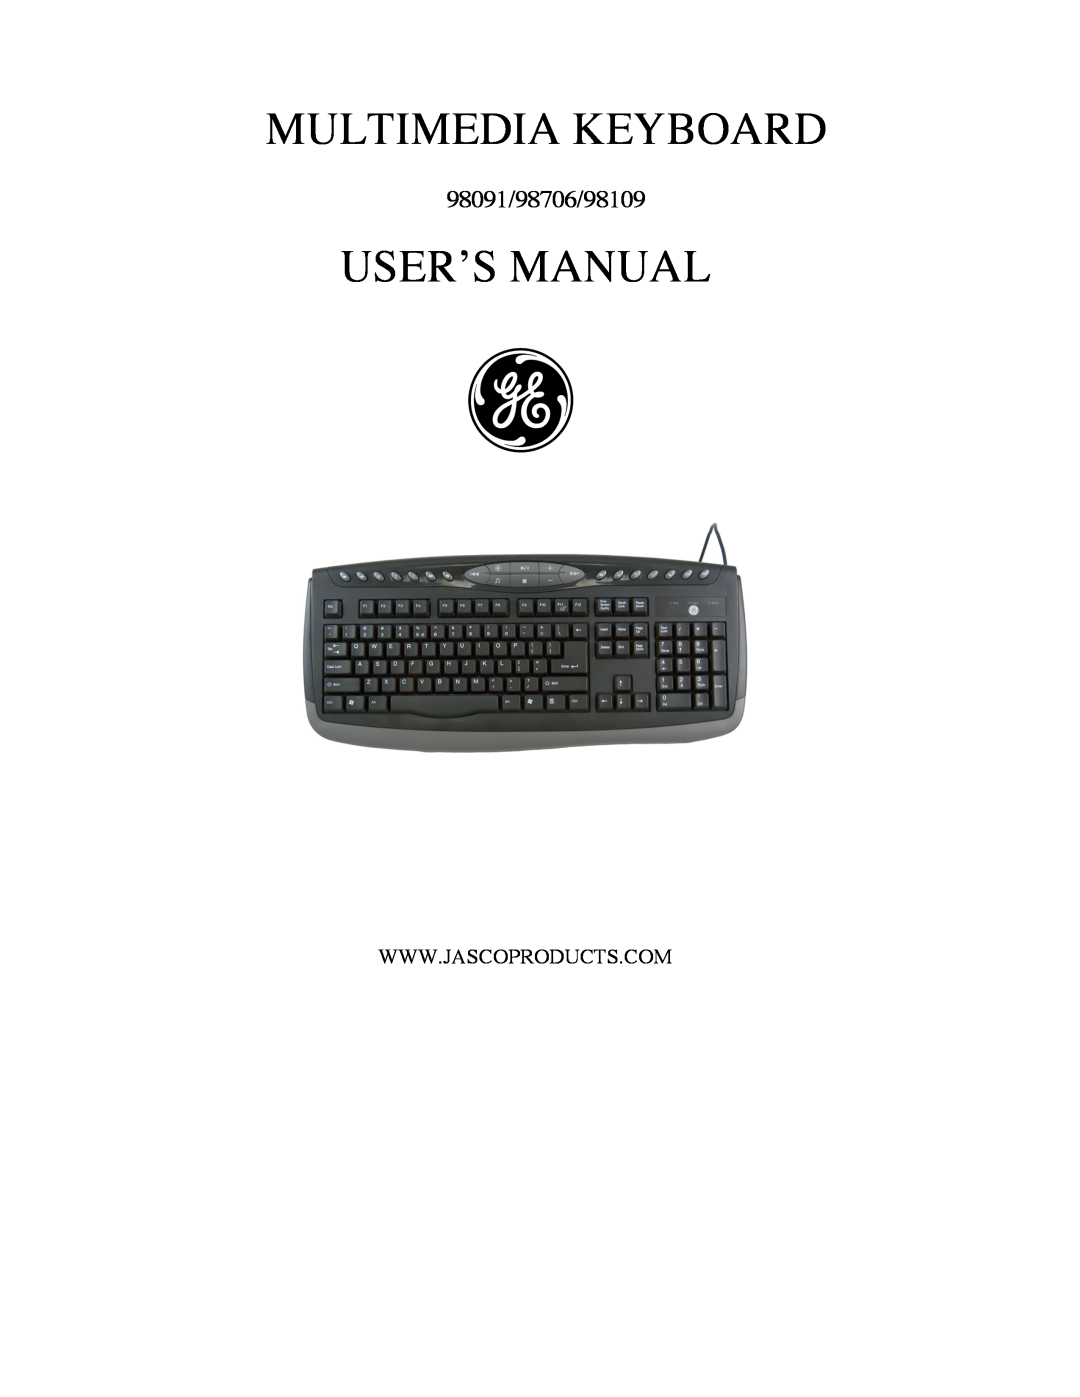 GE user manual Multimedia Keyboard, User’S Manual, 98091/98706/98109 